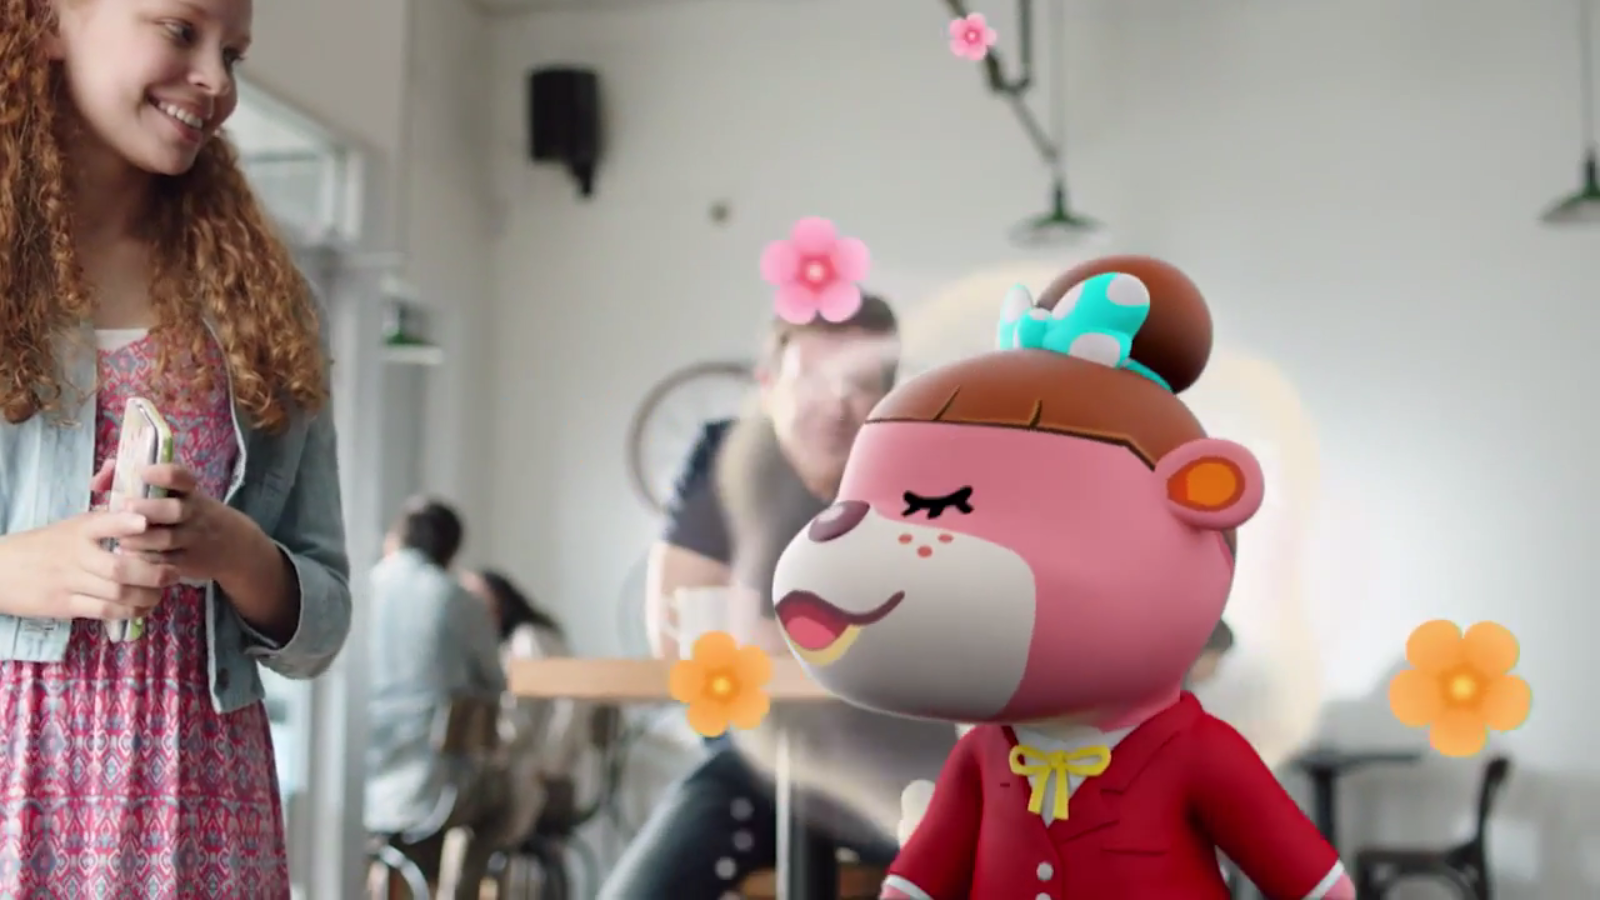 Animal Crossing Happy Home Designer CG Trailer Nintendo